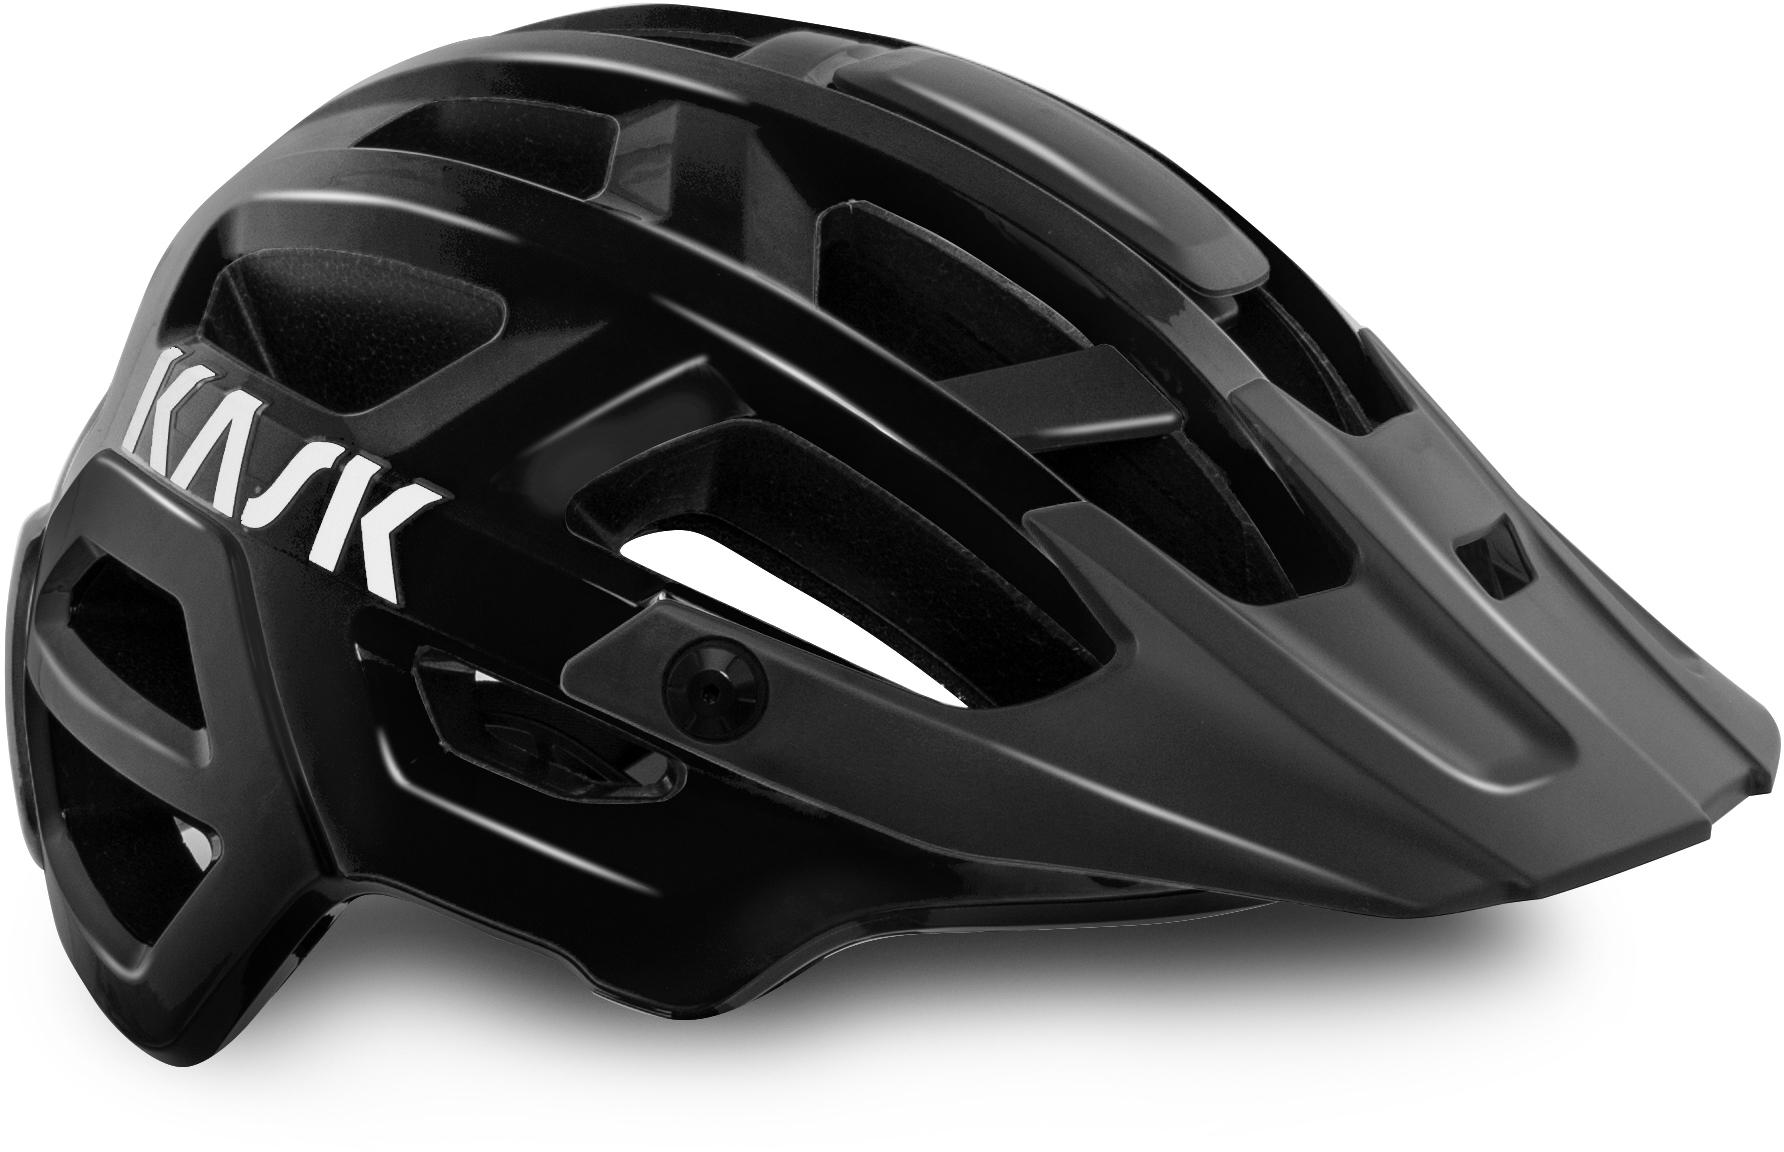 Kask Rex Wg11 Mtb Helmet, Black, Medium